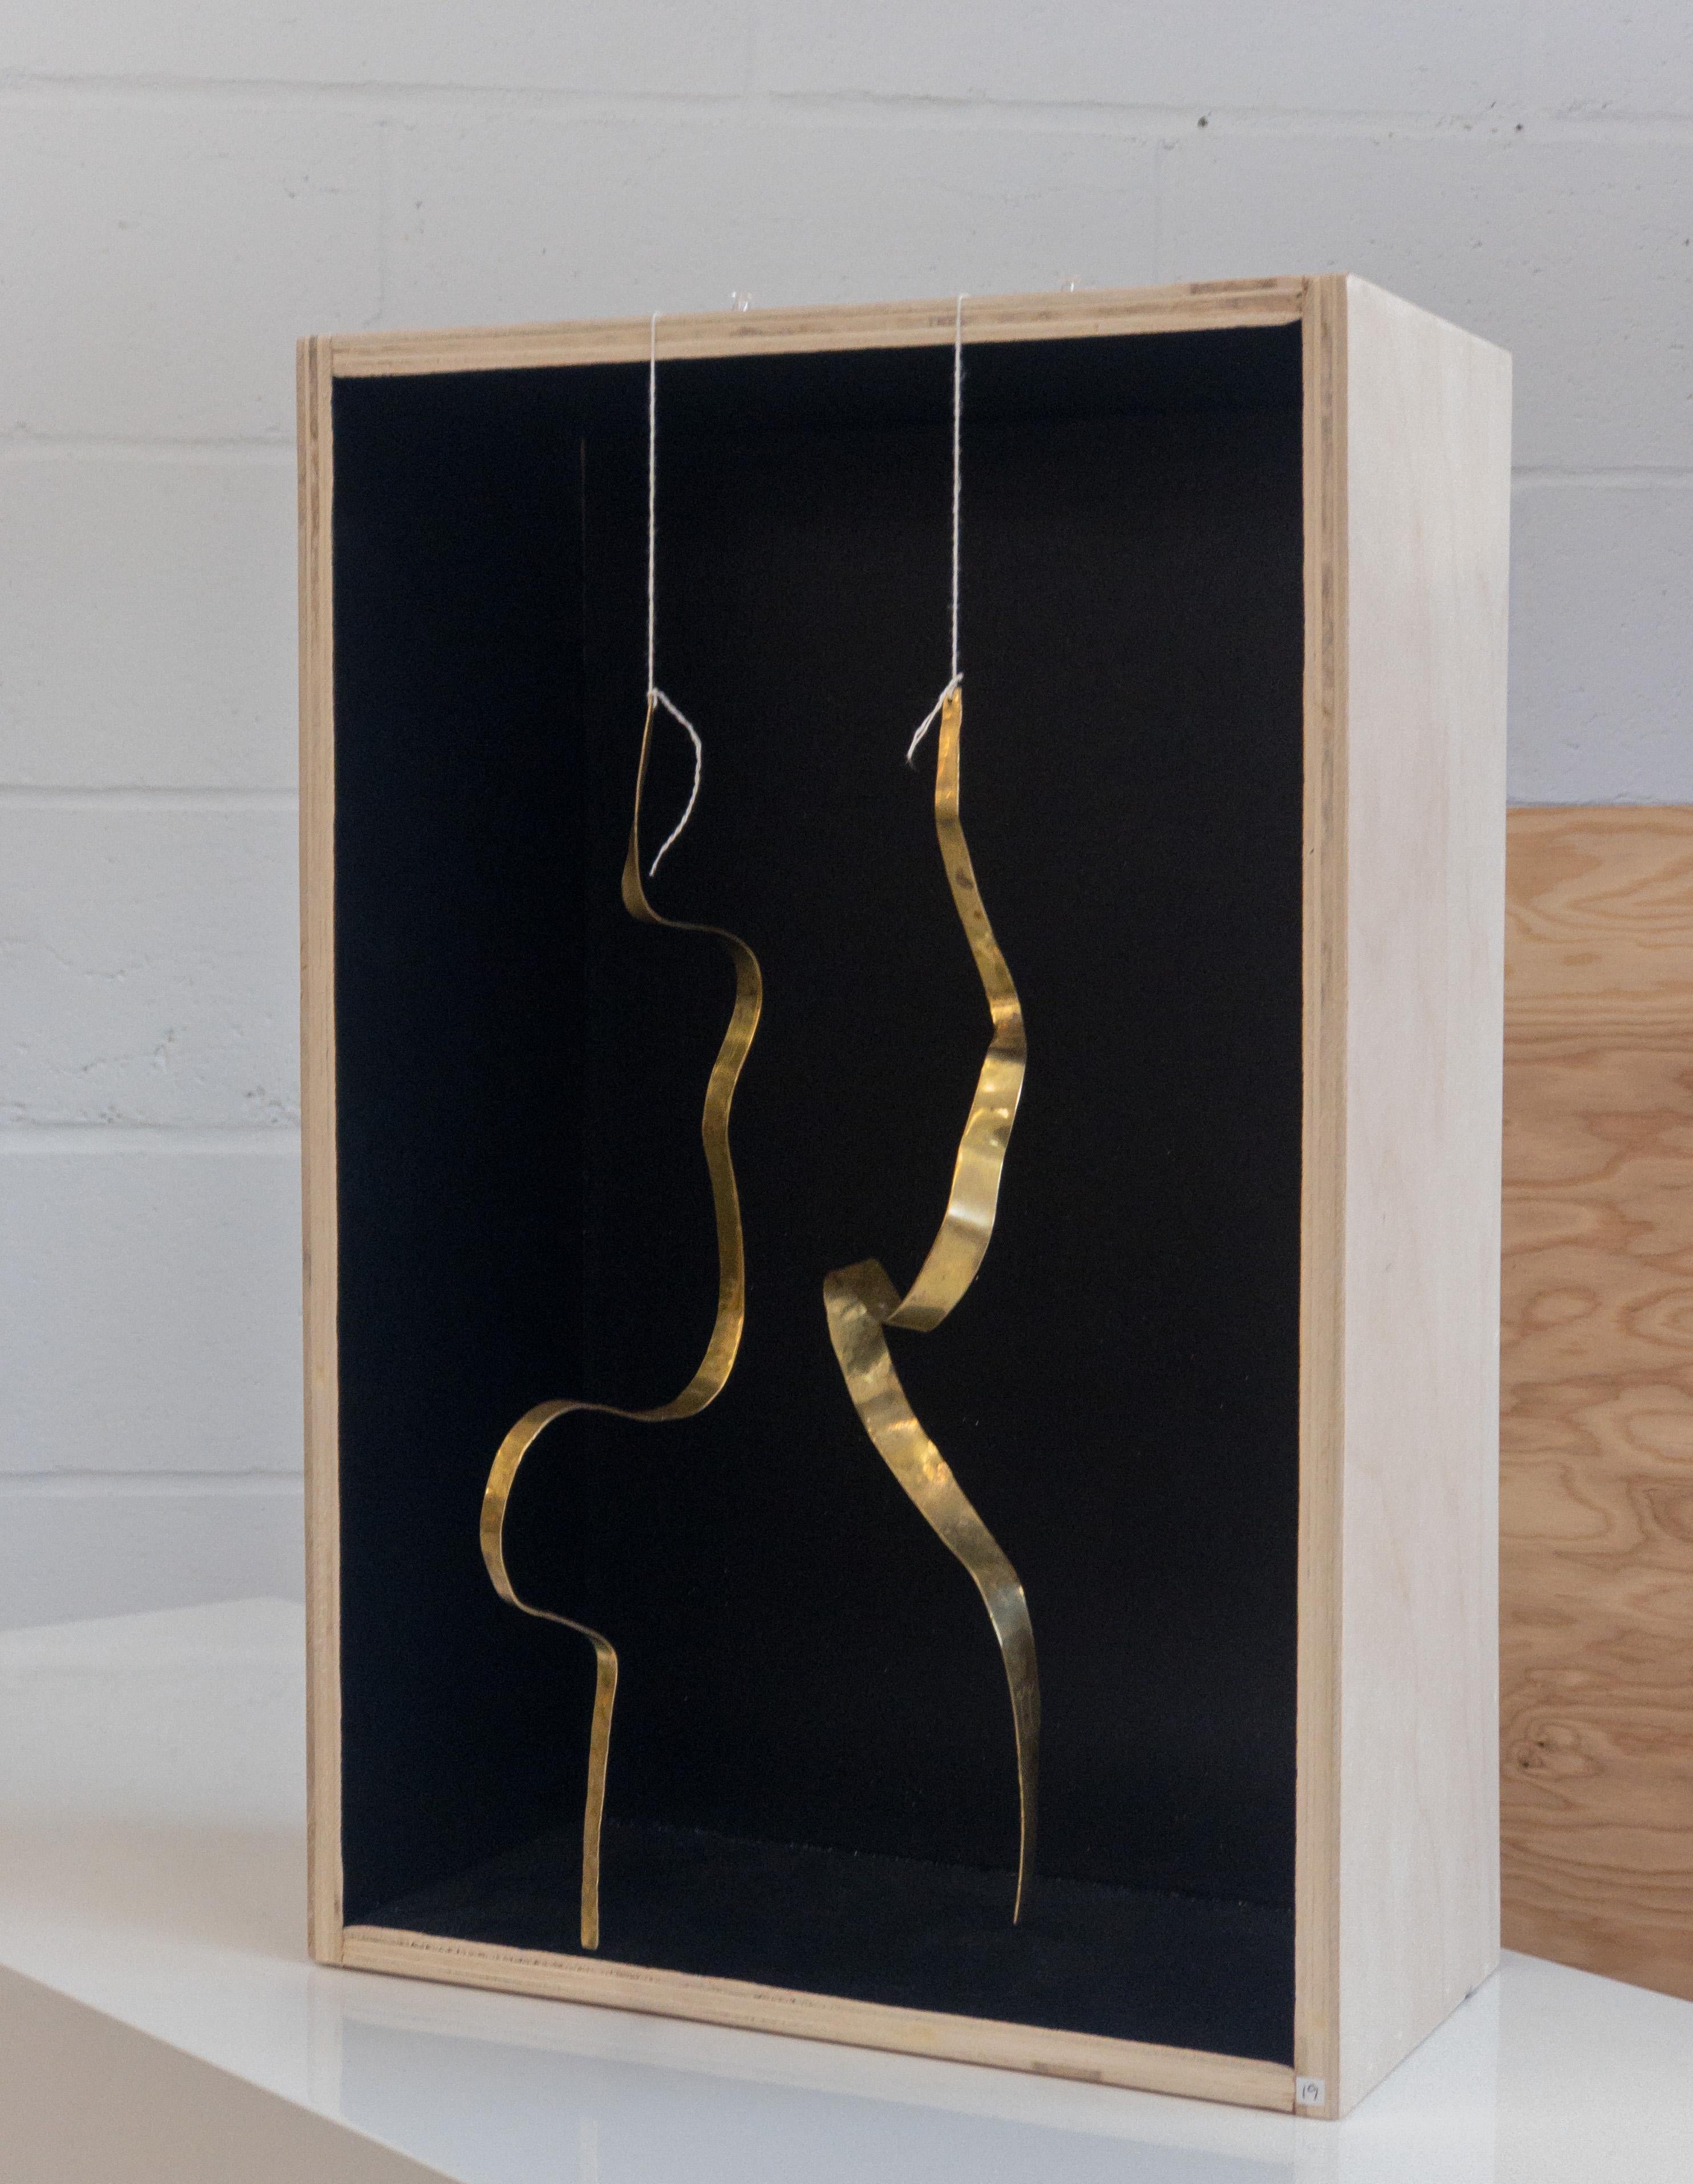 Paire de sculptures cinétiques en laiton, martelées à la main, présentées dans une boîte en bois. 
Cette paire est un modèle pour les grandes "courbes" de Jacques Jarrige.
Unique et signé